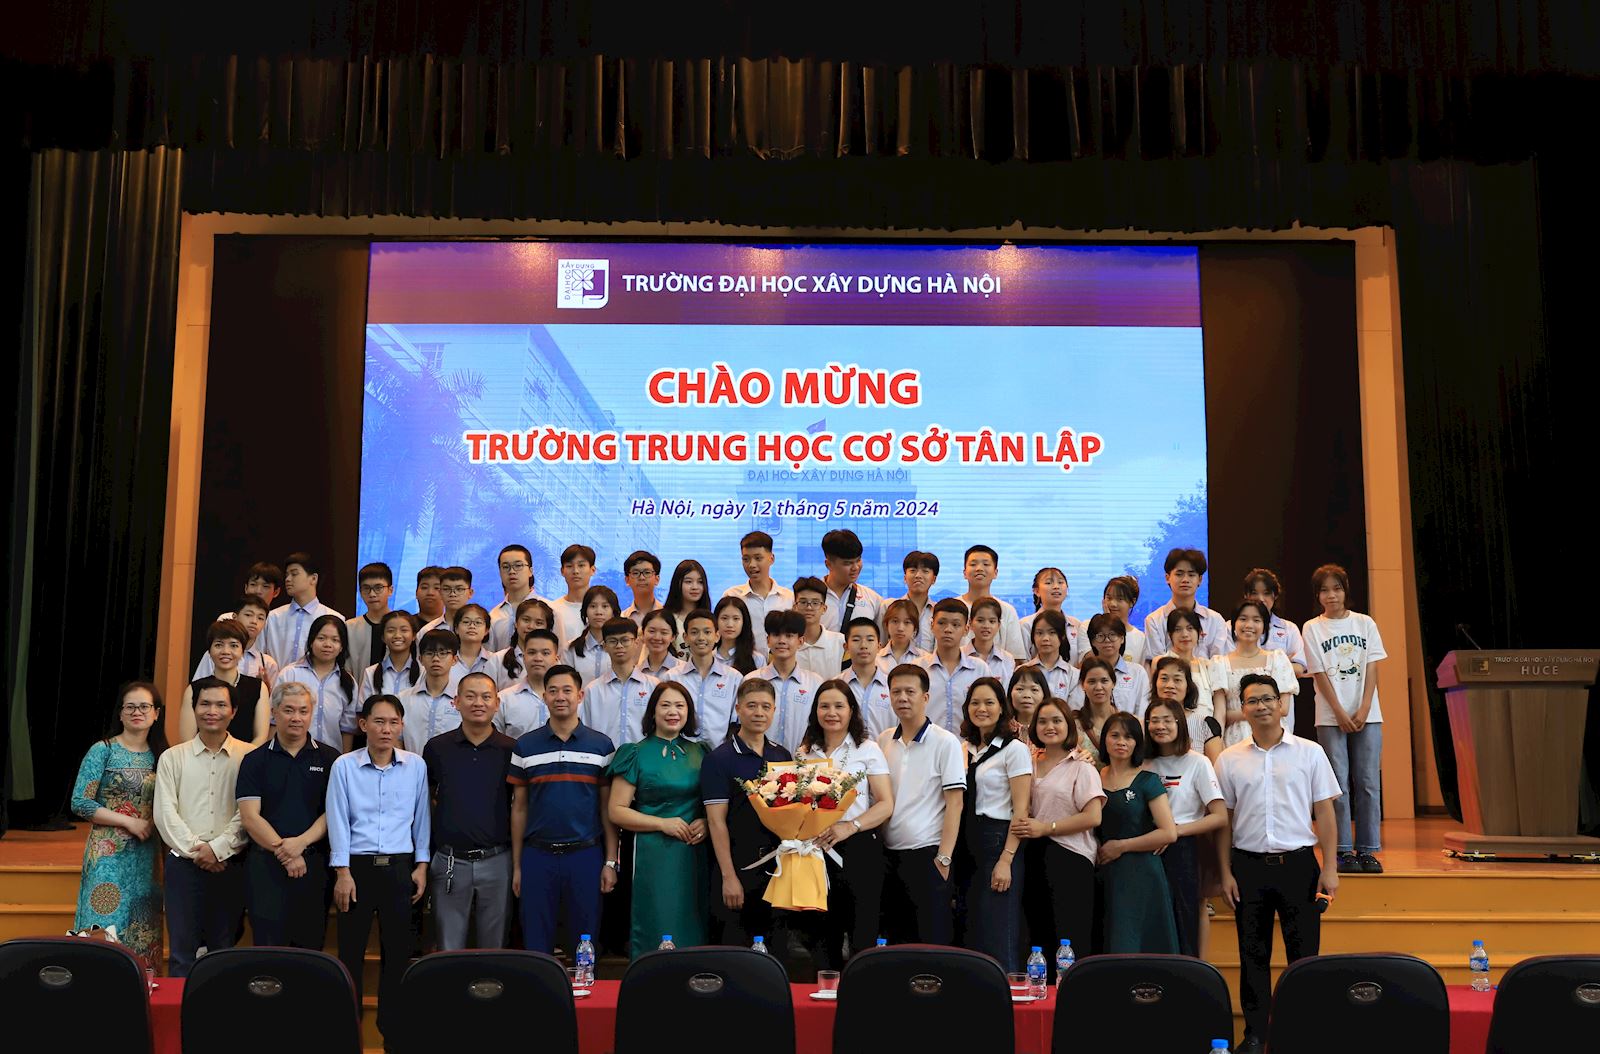 Trải nghiệm của Đoàn tham quan Trường THCS Tân Lập - Đan Phượng tại Trường Đại học Xây dựng Hà Nội